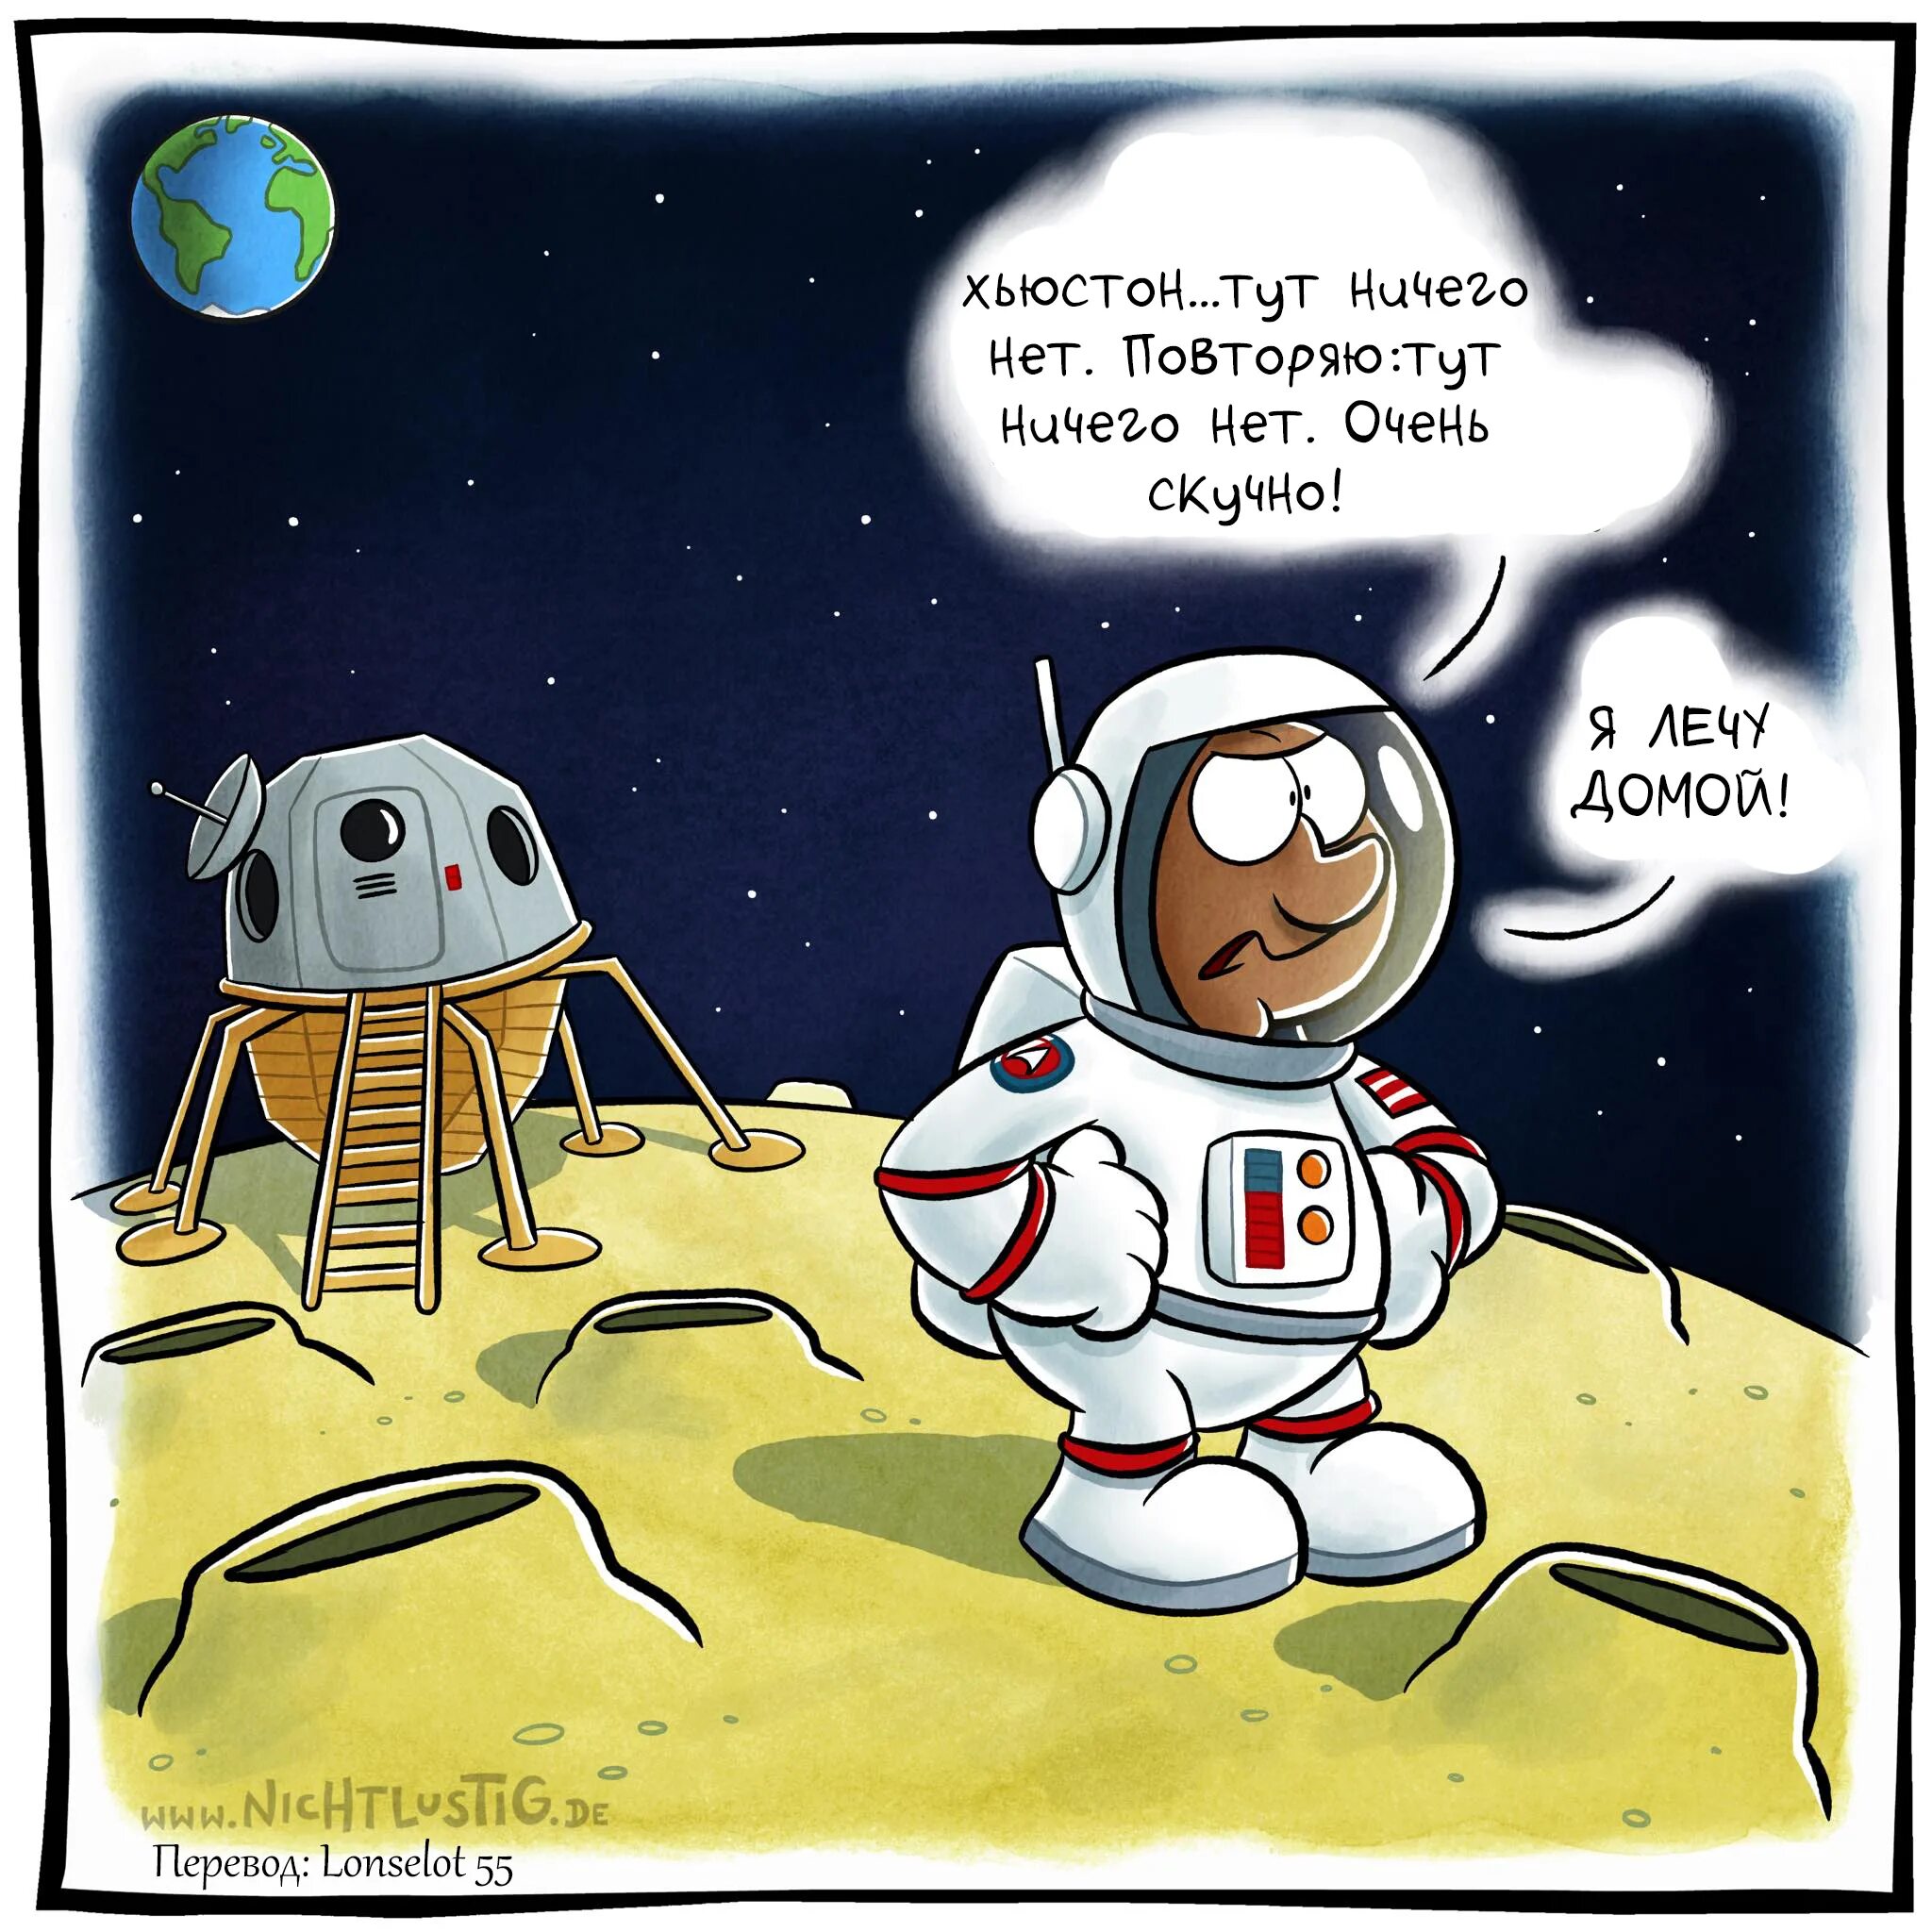 Fake moon comic. Комиксы про космос. Комиксы детские космос. Комиксы на космическую тему. Мемы про космос комиксы.